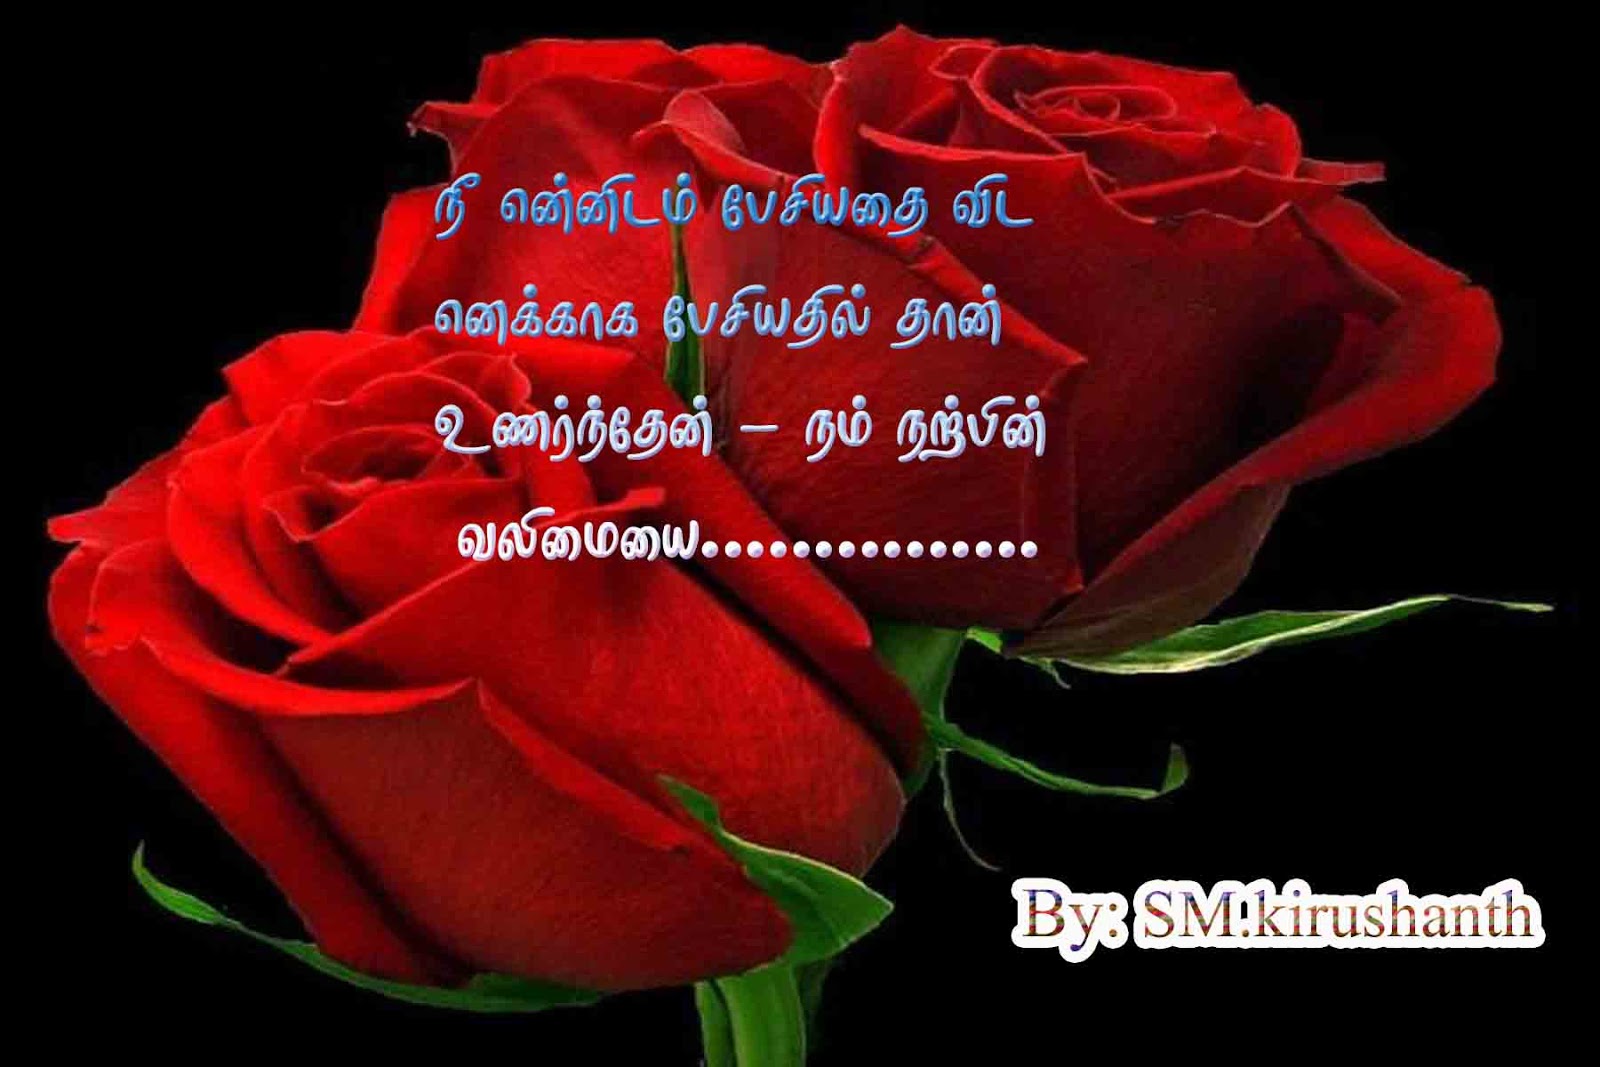 ... kavithai keywords latest love kavithai tamil pirivu tamil kavithai